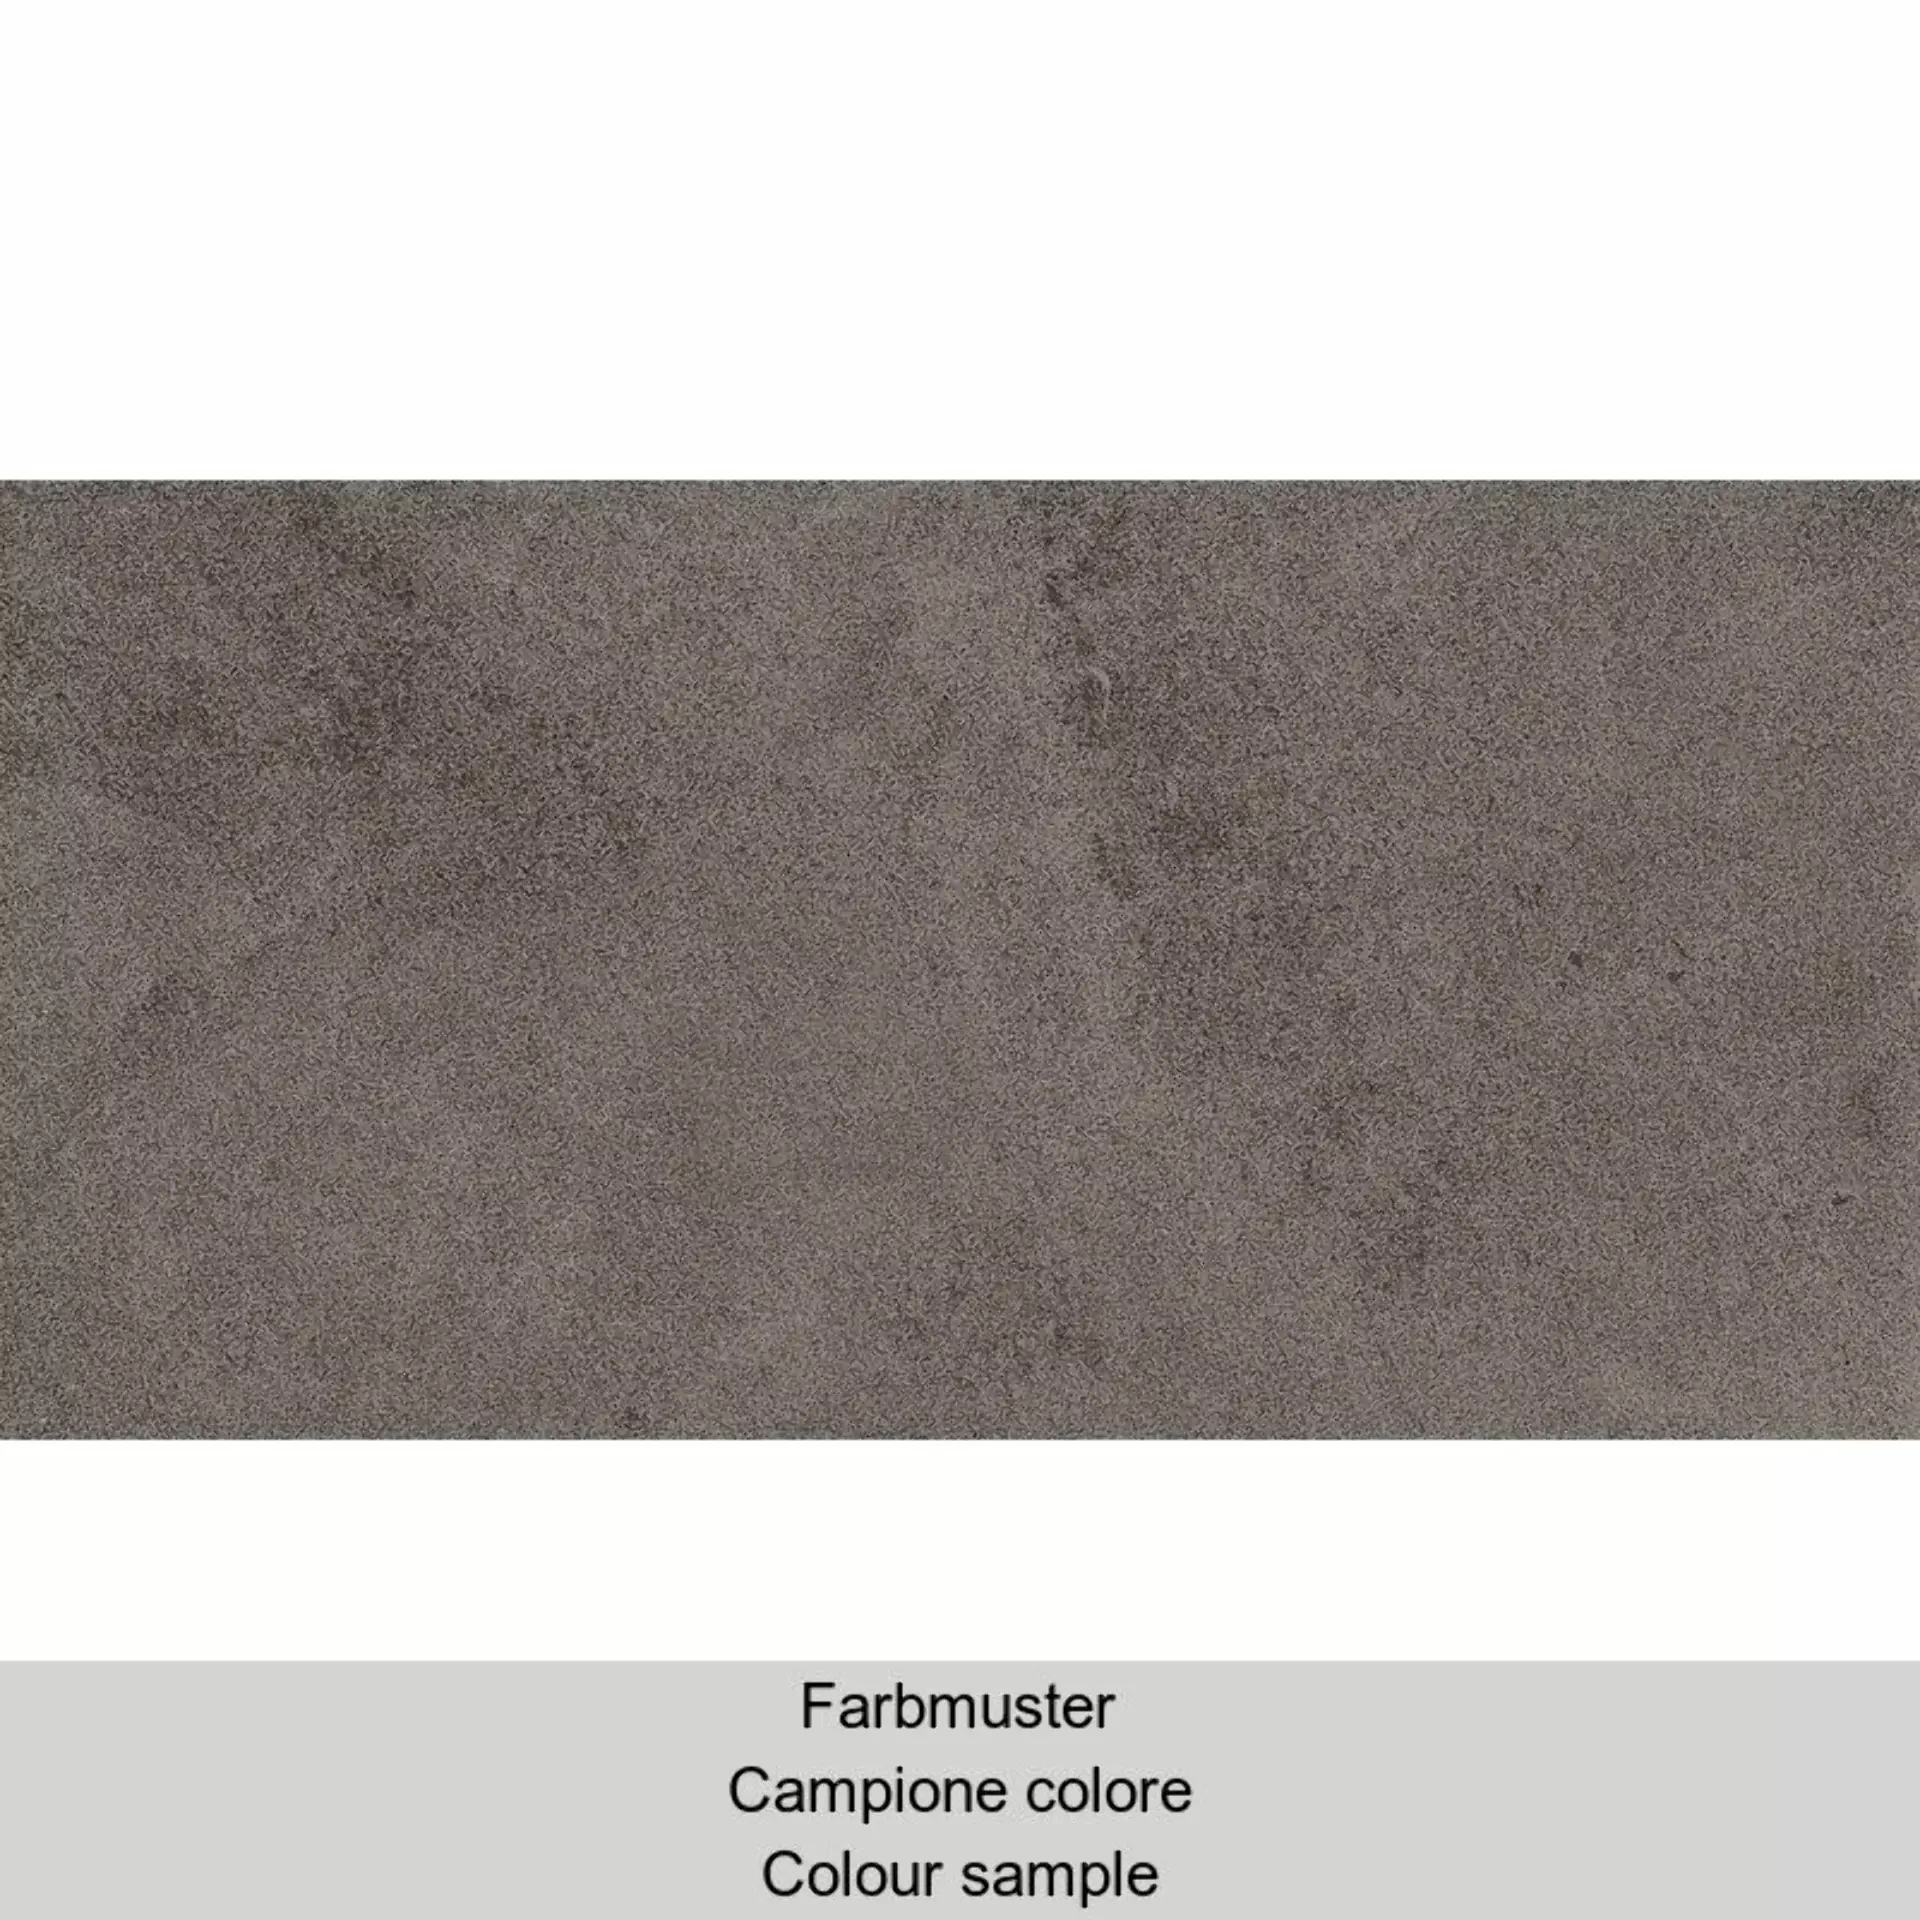 Casalgrande Pietre Etrusche Vulci Naturale – Matt 7790188 30x60cm rektifiziert 10mm